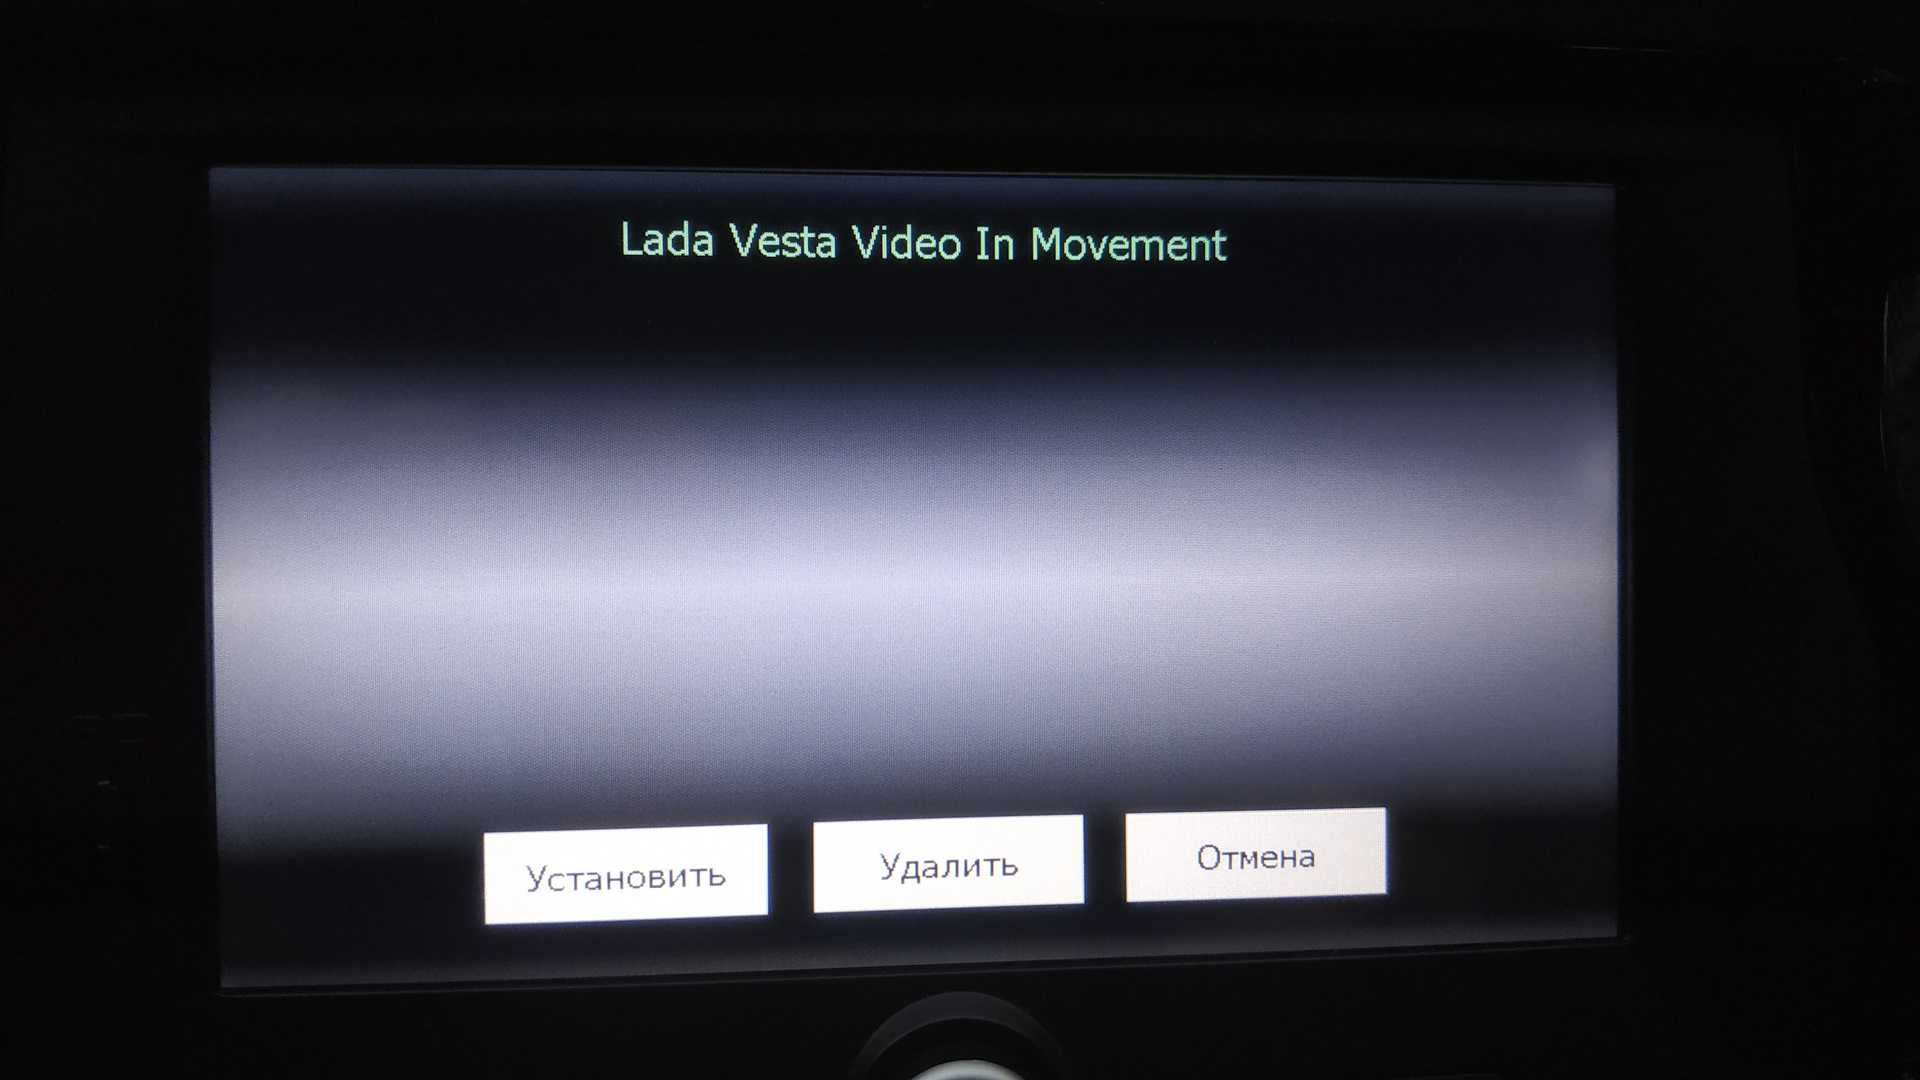 Как смотреть видео на андроид авто: домашний кинотеатр прямо в машине